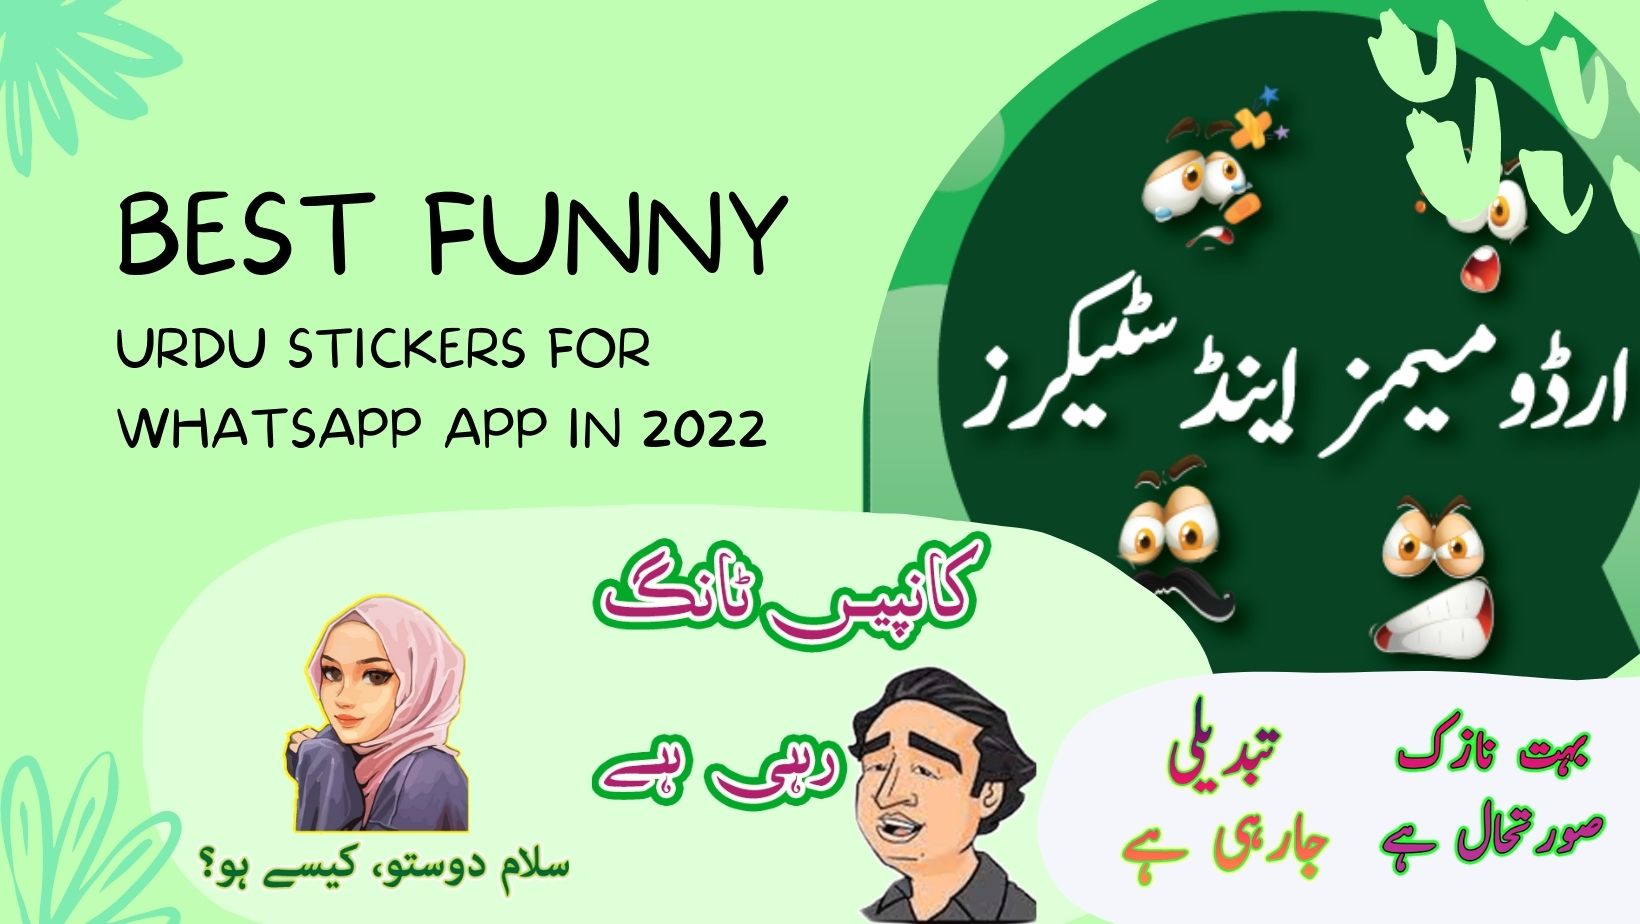 Funny Urdu stickers for whatsapp